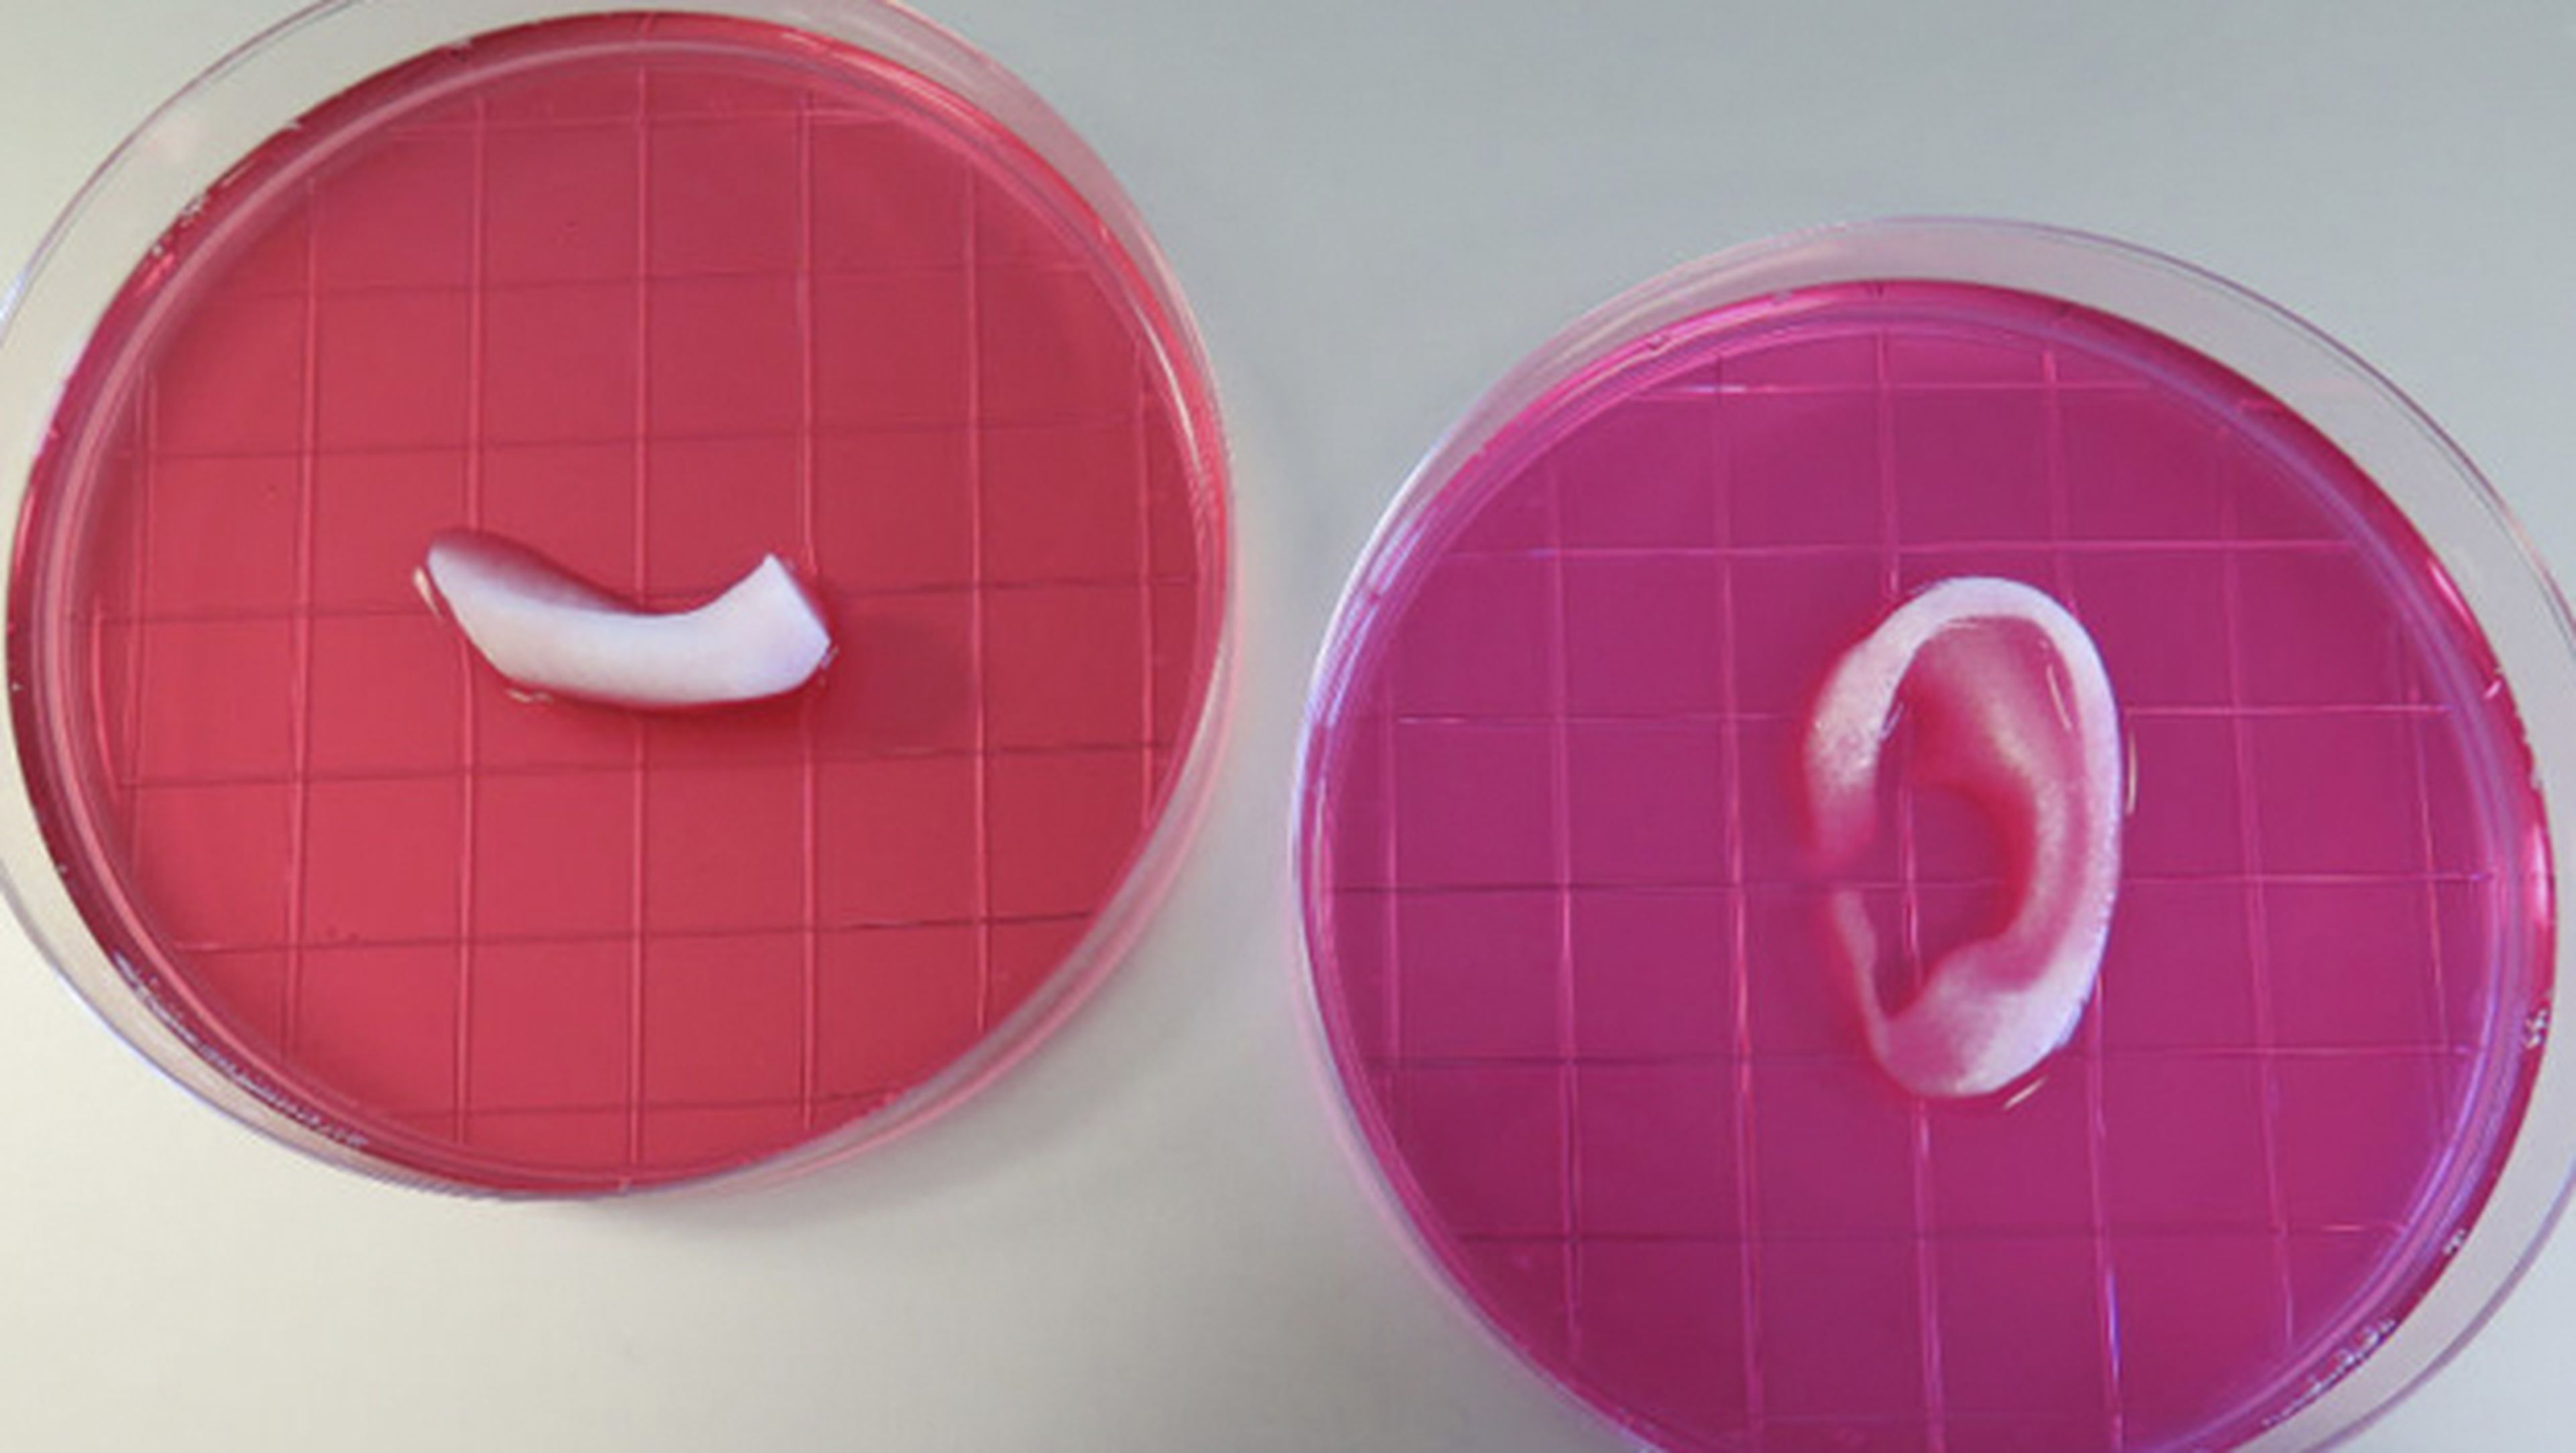 Tejidos humanos impresos en 3D